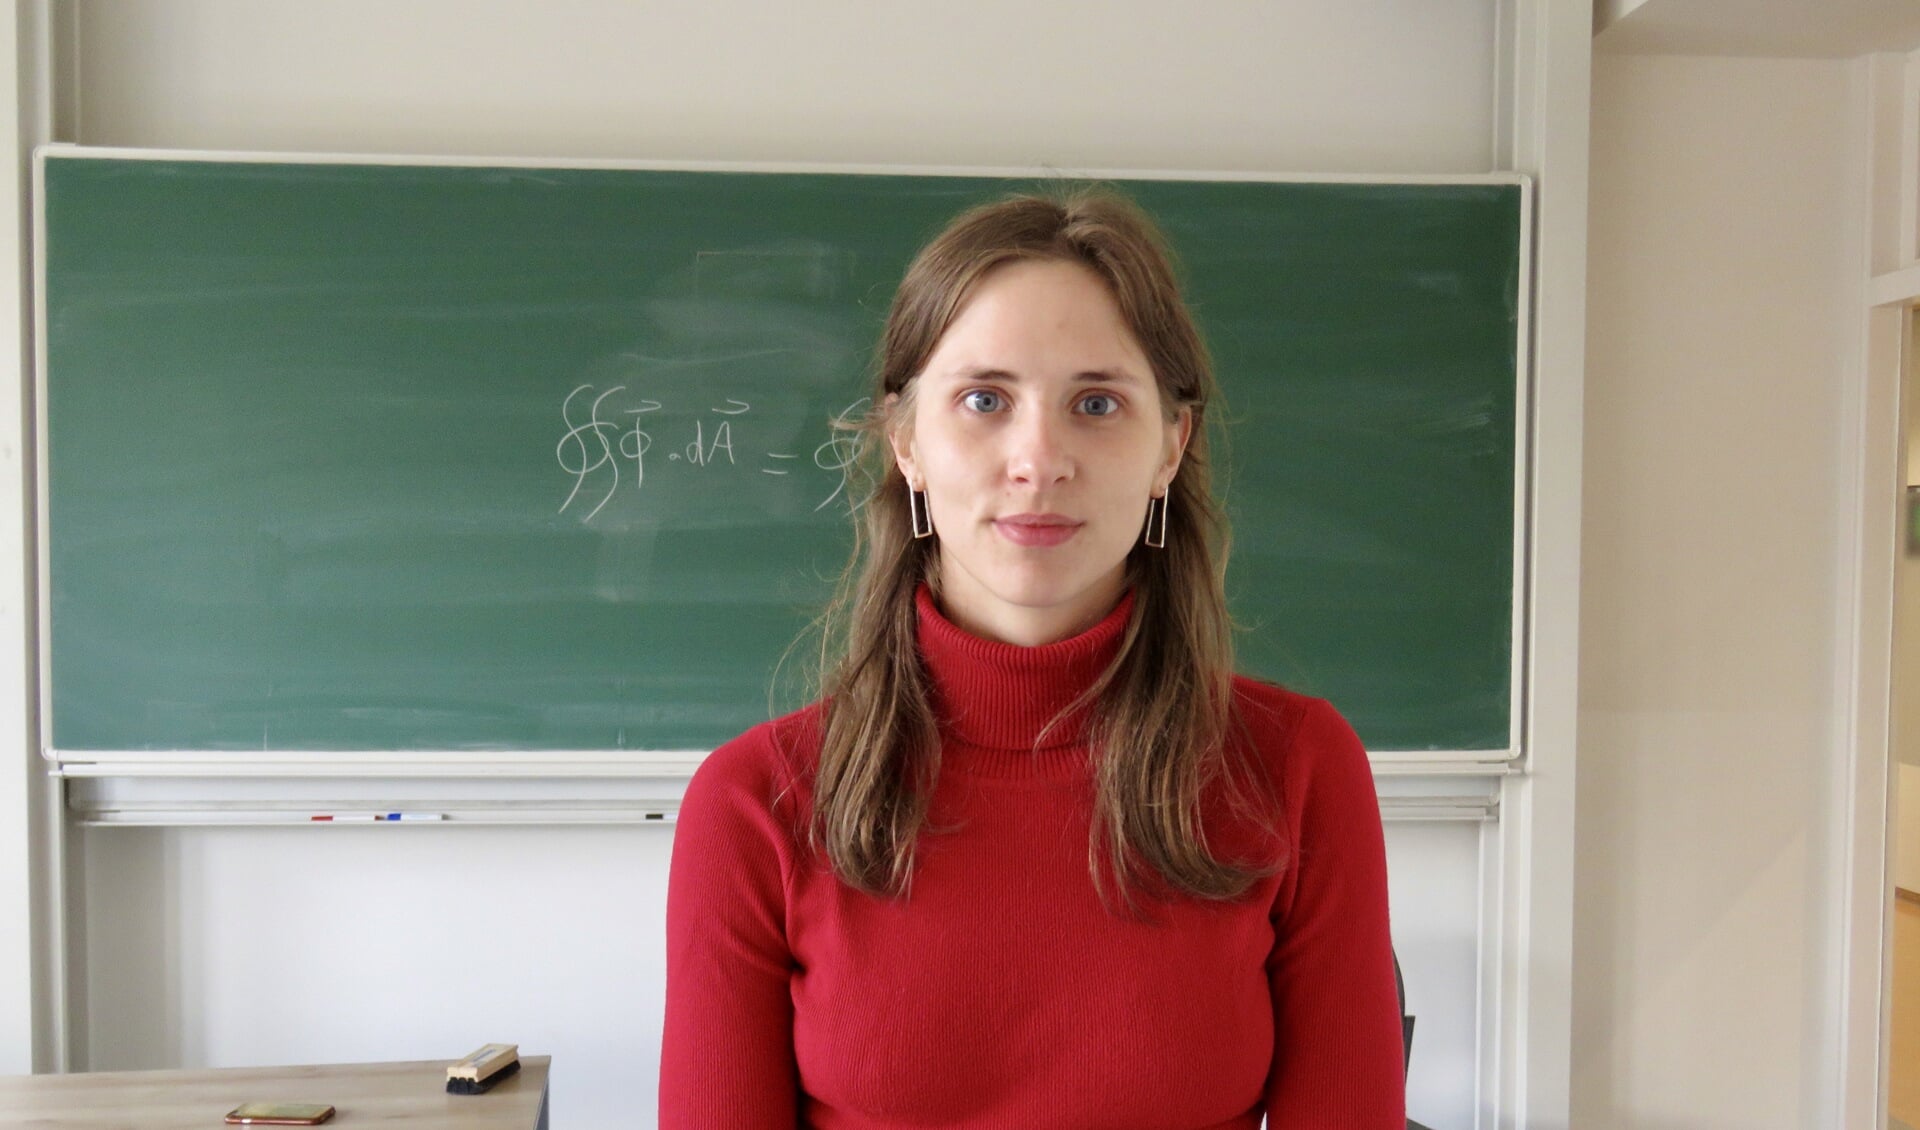 Marit heeft dyscalculie en studeert natuurkunde: "Natuurkunde is heel anders dan rekenen."